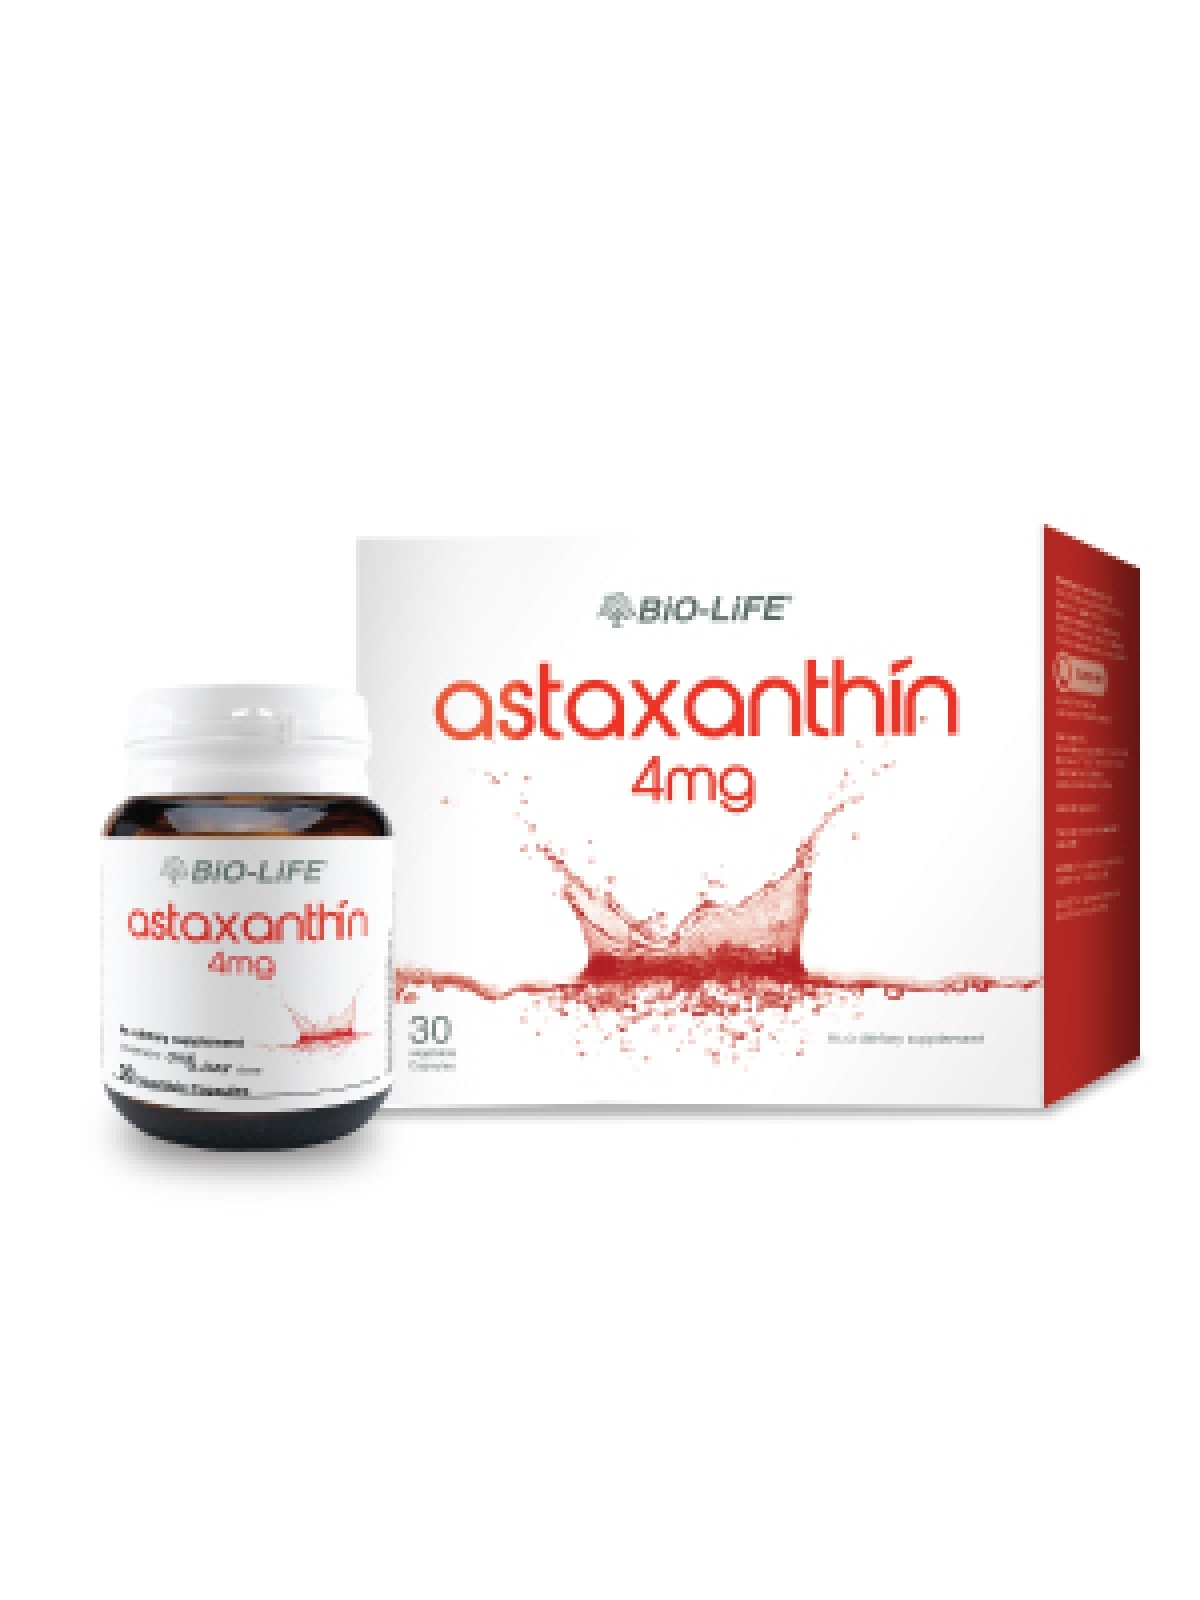 ماهو أستازانتين Astaxanthin الذي أقوى 6000 مرة من فيتامين C !